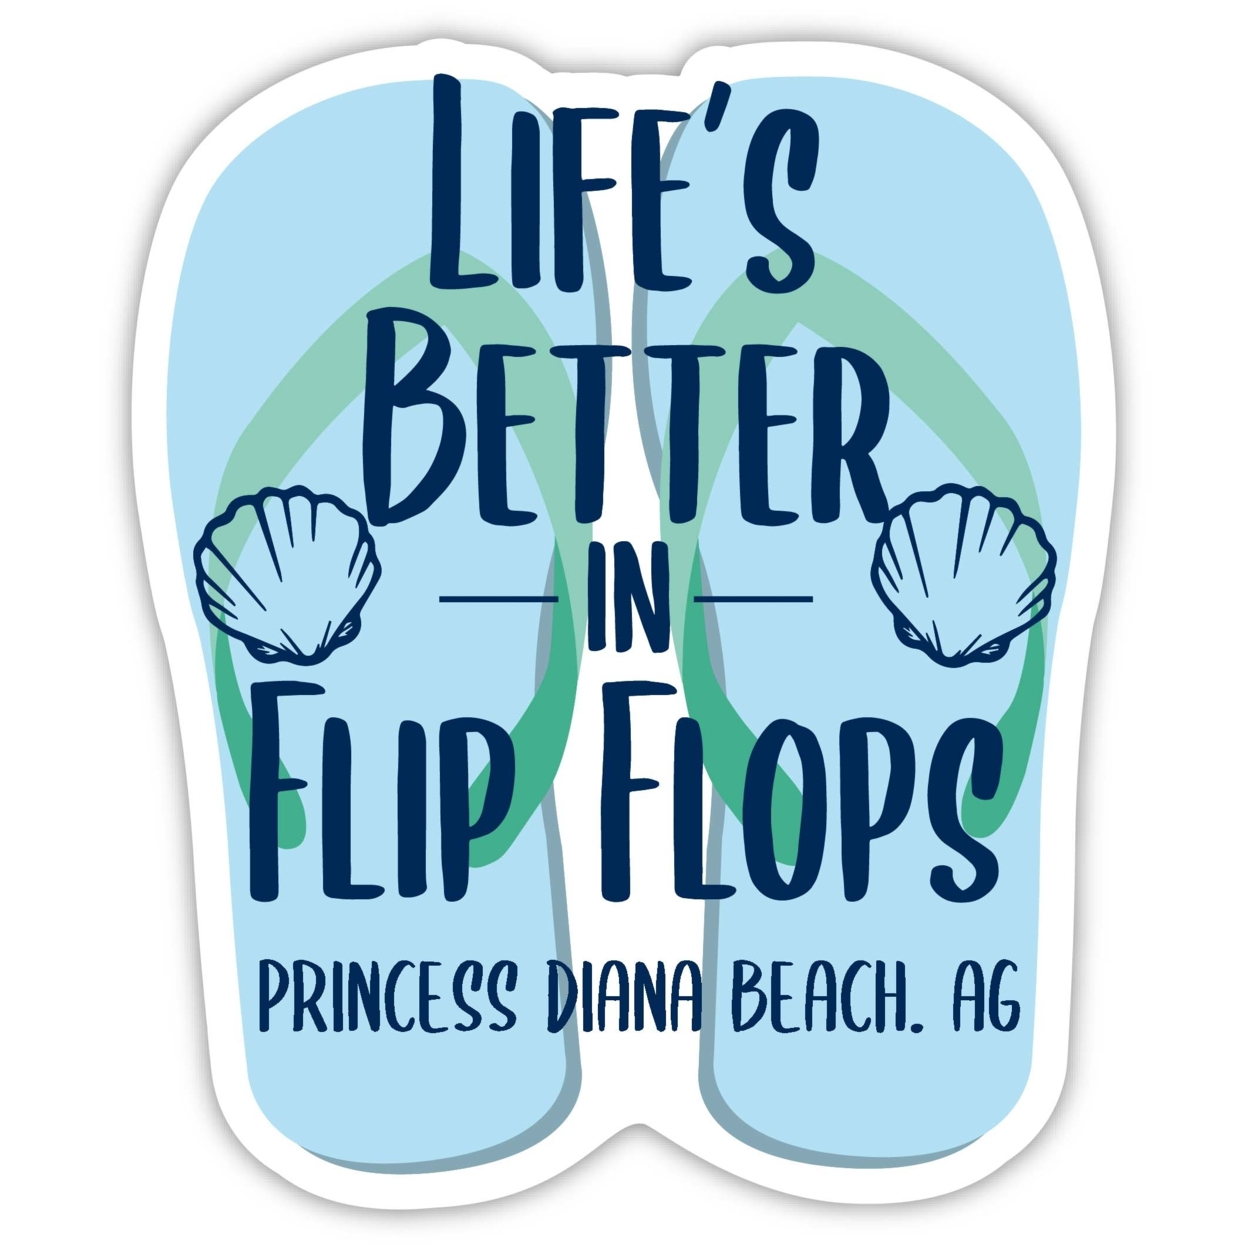 Princess Diana Beach Antigua And Barbuda Souvenir 4 Inch Vinyl Decal Sticker Flip Flop Design